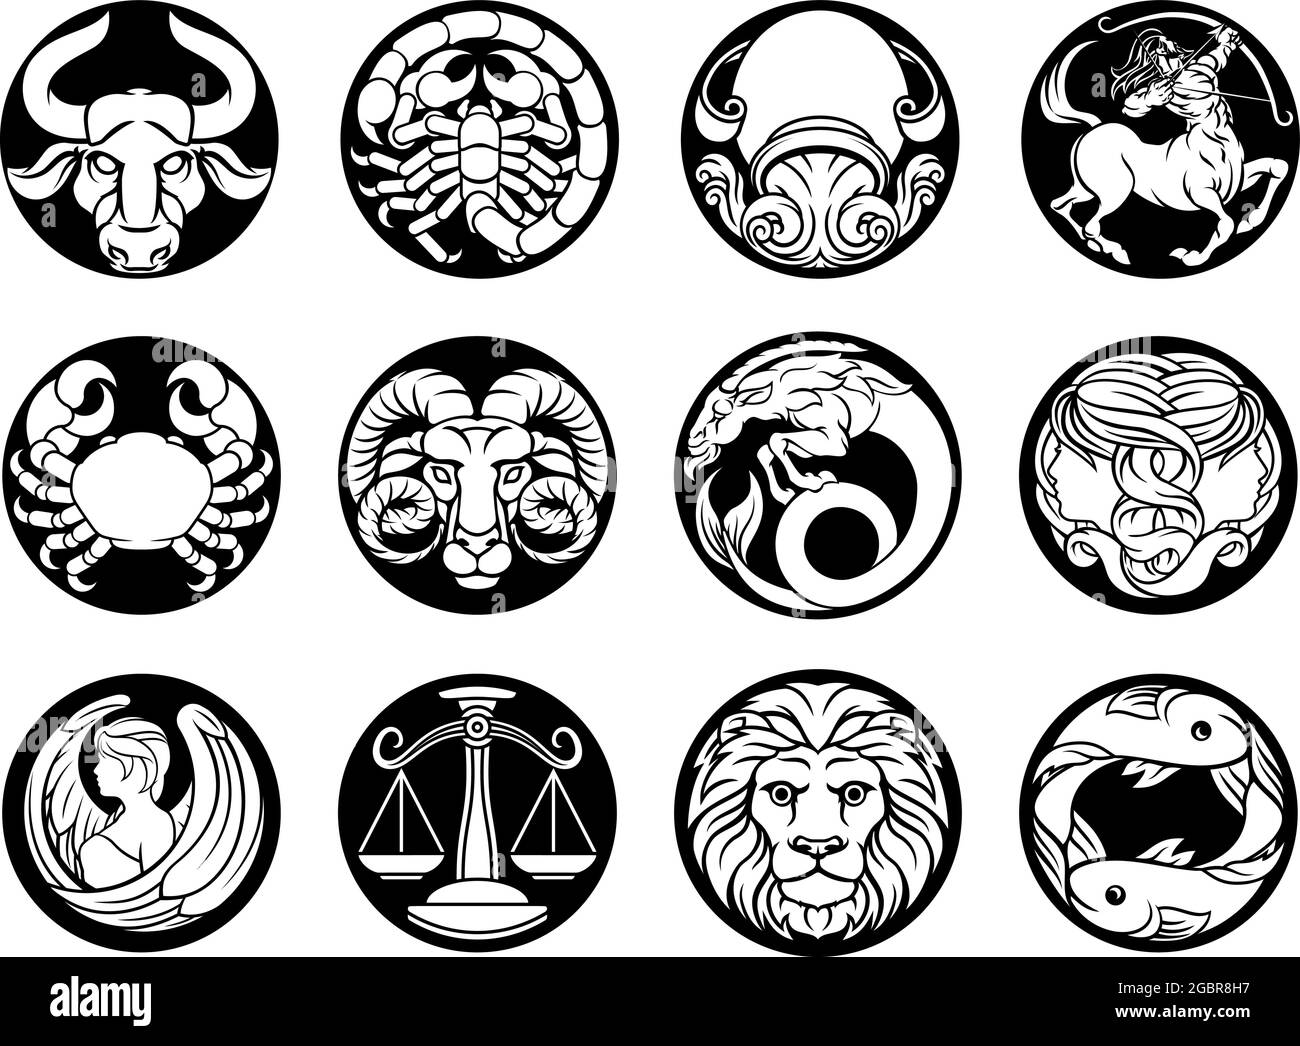 Oroscopo zodiaco astrologia stella simboli set Illustrazione Vettoriale